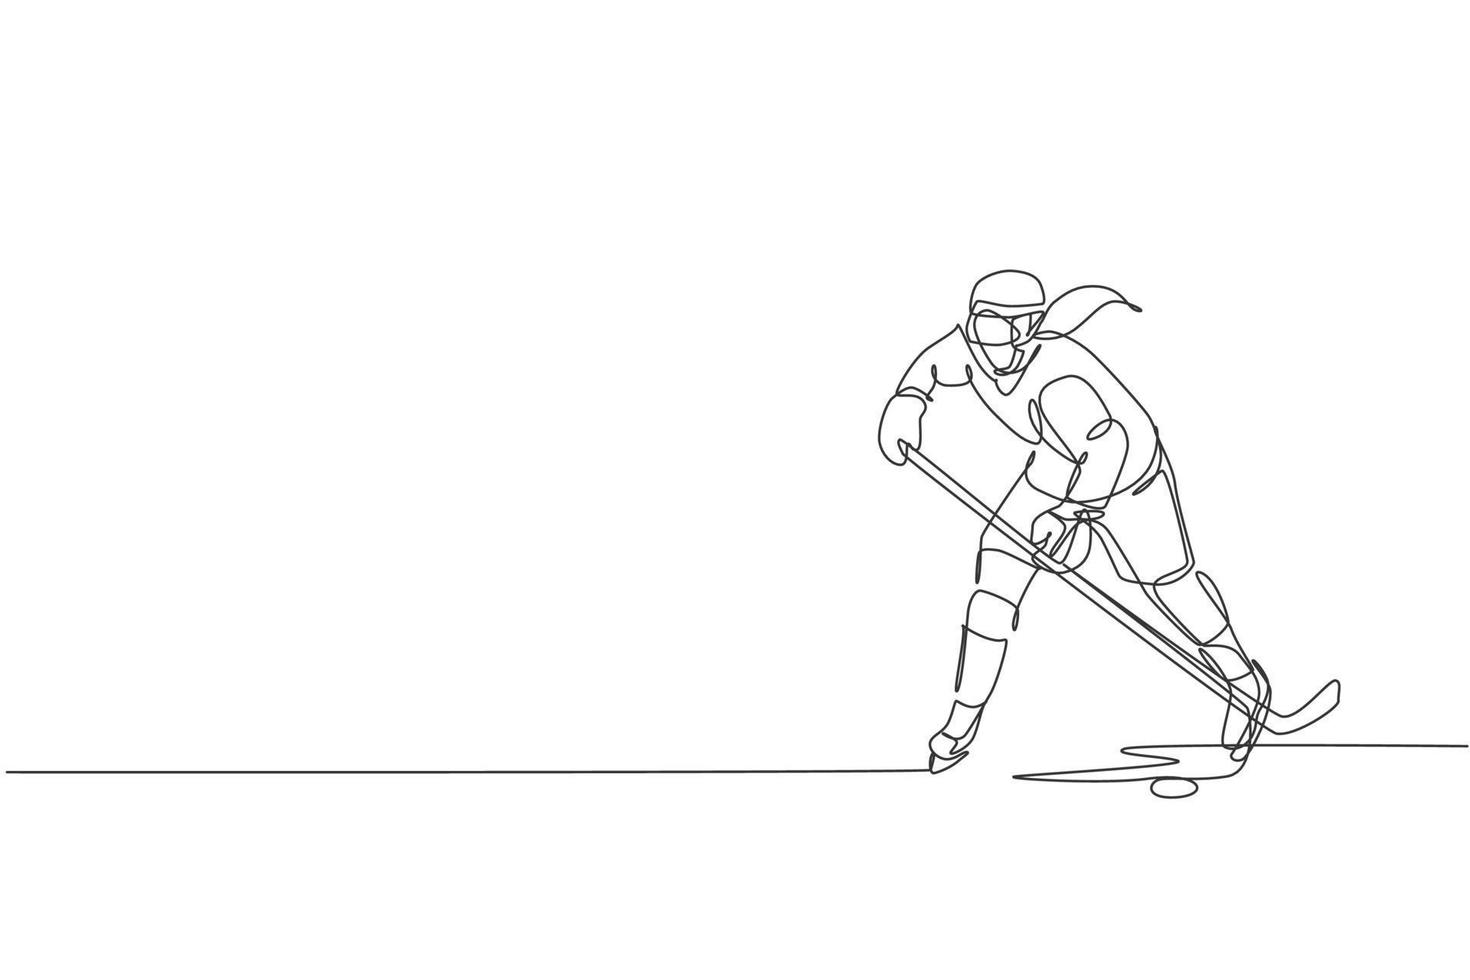 un dibujo de una sola línea de un joven jugador de hockey sobre hielo en acción para jugar un juego competitivo en el gráfico de ilustración vectorial del estadio de pista de hielo. concepto de torneo deportivo. diseño moderno de dibujo de línea continua vector